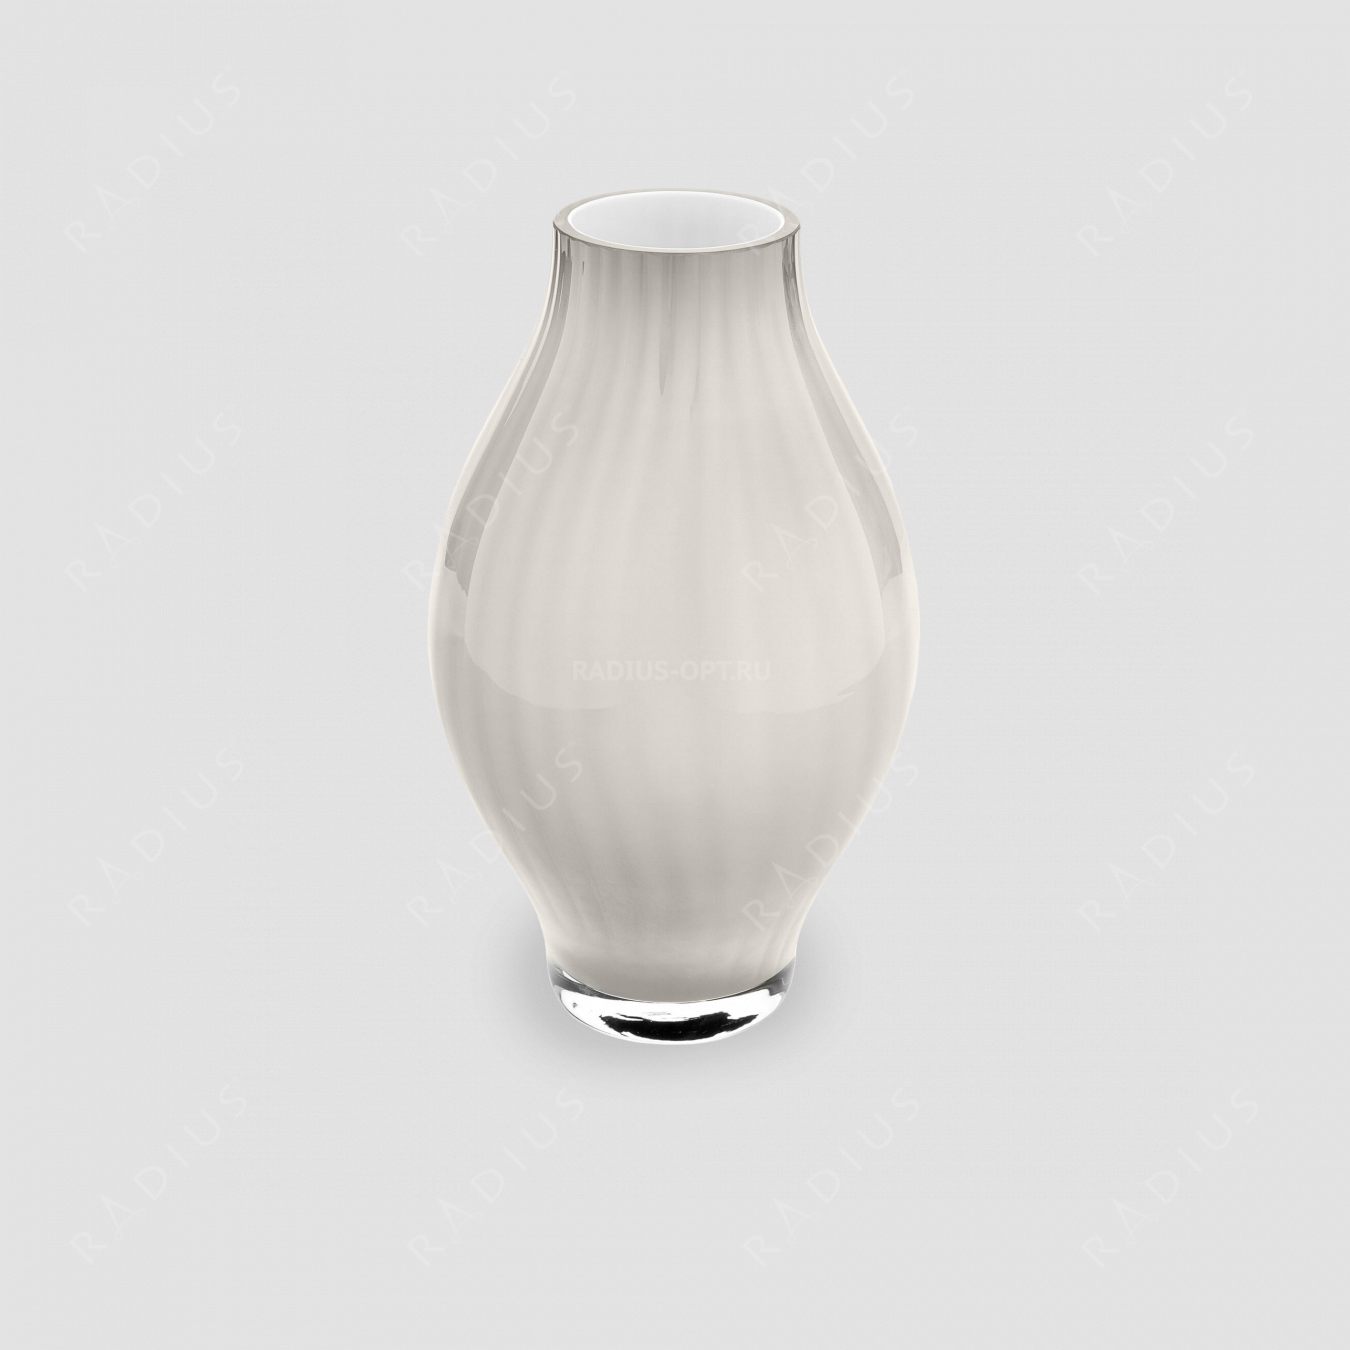 Стеклянная ваза для цветов, высота: 26,5 см, материал: стекло, цвет: белый, серия Arianna, IVV (Italy), Италия